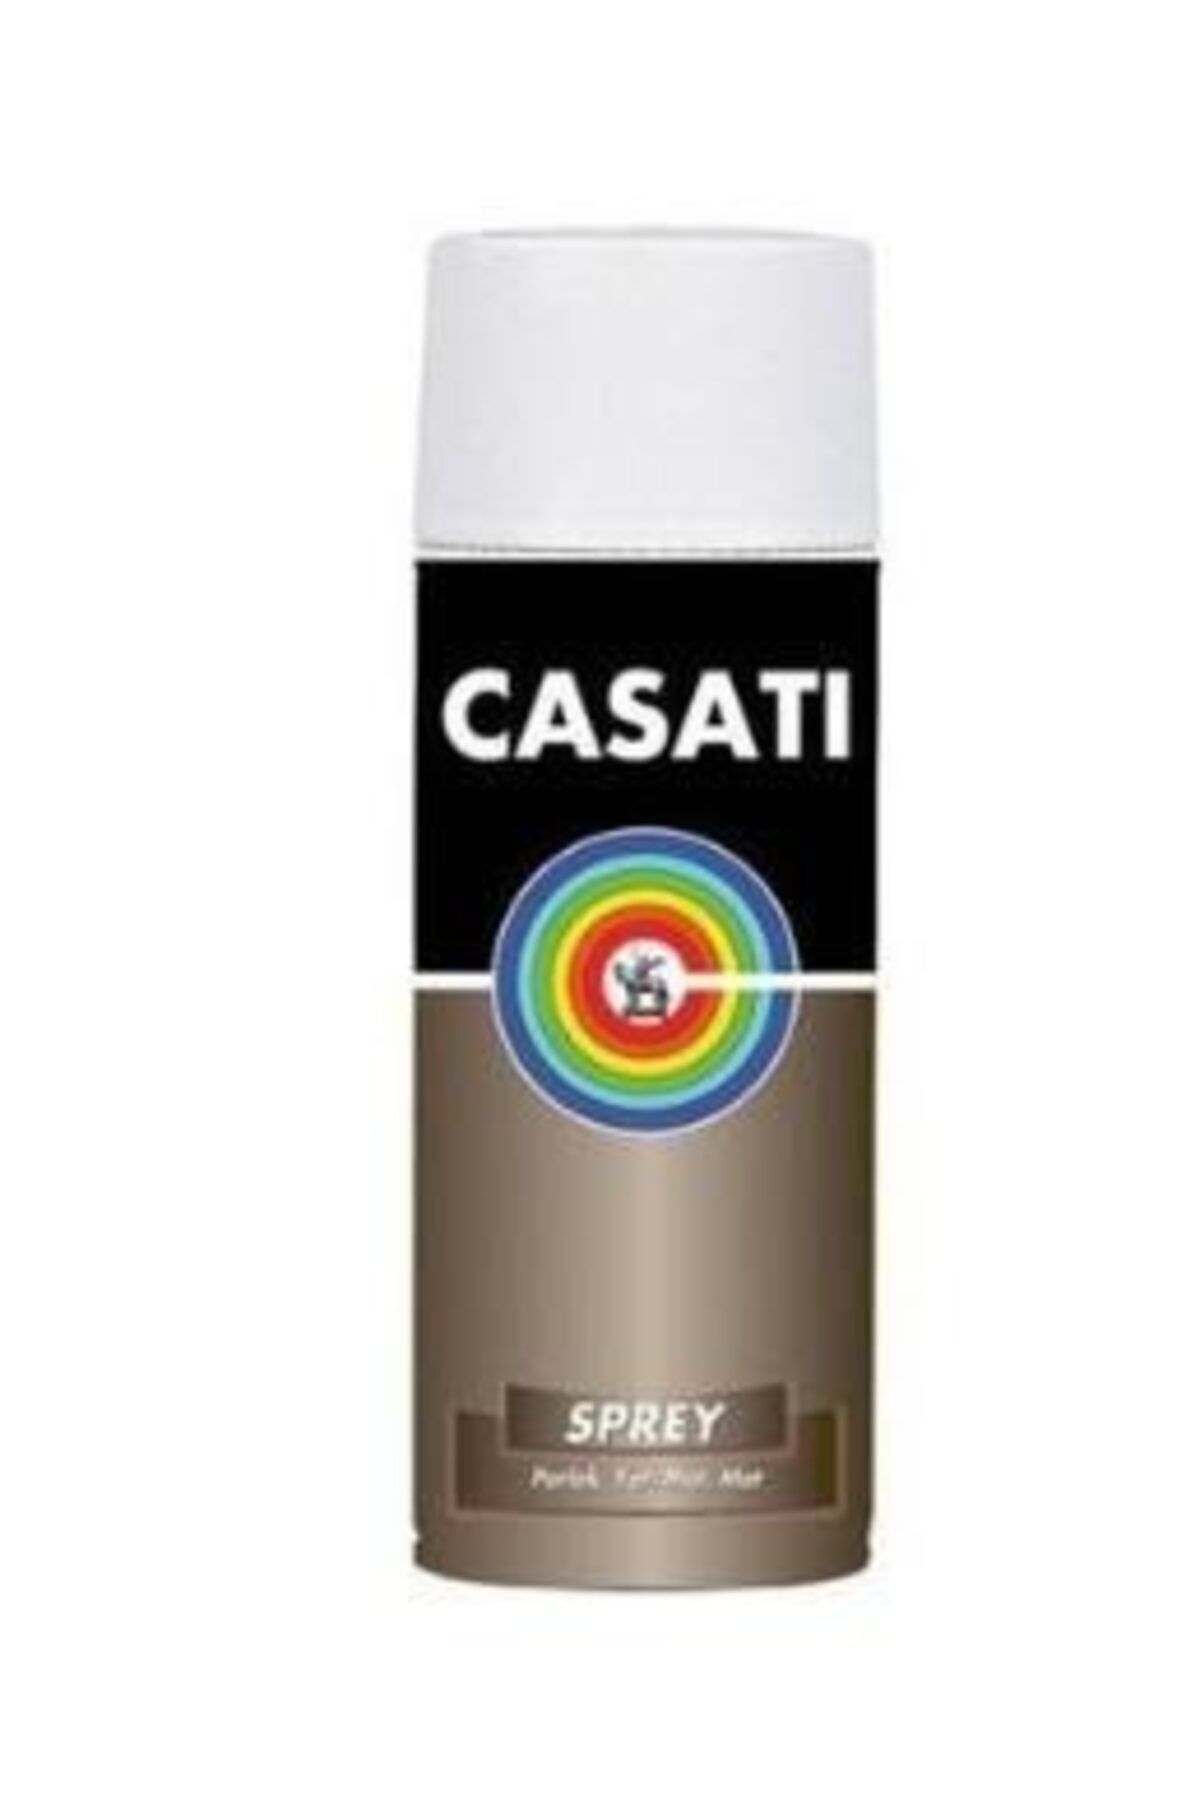 Casati Sprey Boya 400ml - Metalik/floresan Renkler Metalikmavi